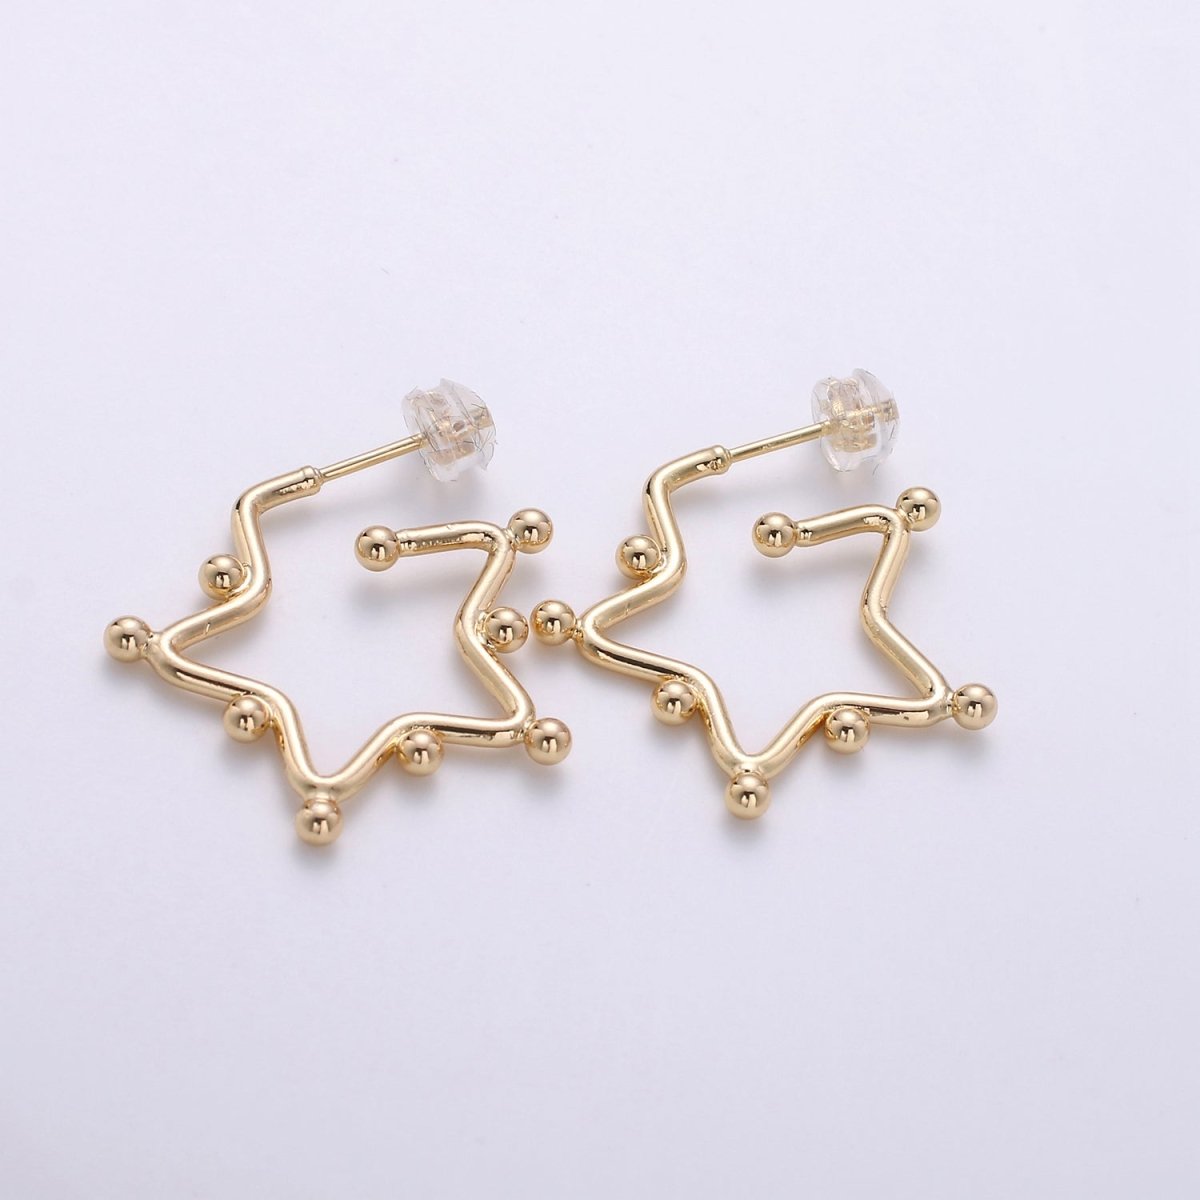 18K Gold Filled Ball Hoop Earrings, Beaded Hoop Earrings, Star Hoop Earrings, Gold Ball Hoop Earrings, 25mm 35mm 45mm Gold Hoop Earring Q-089 Q-090 - DLUXCA